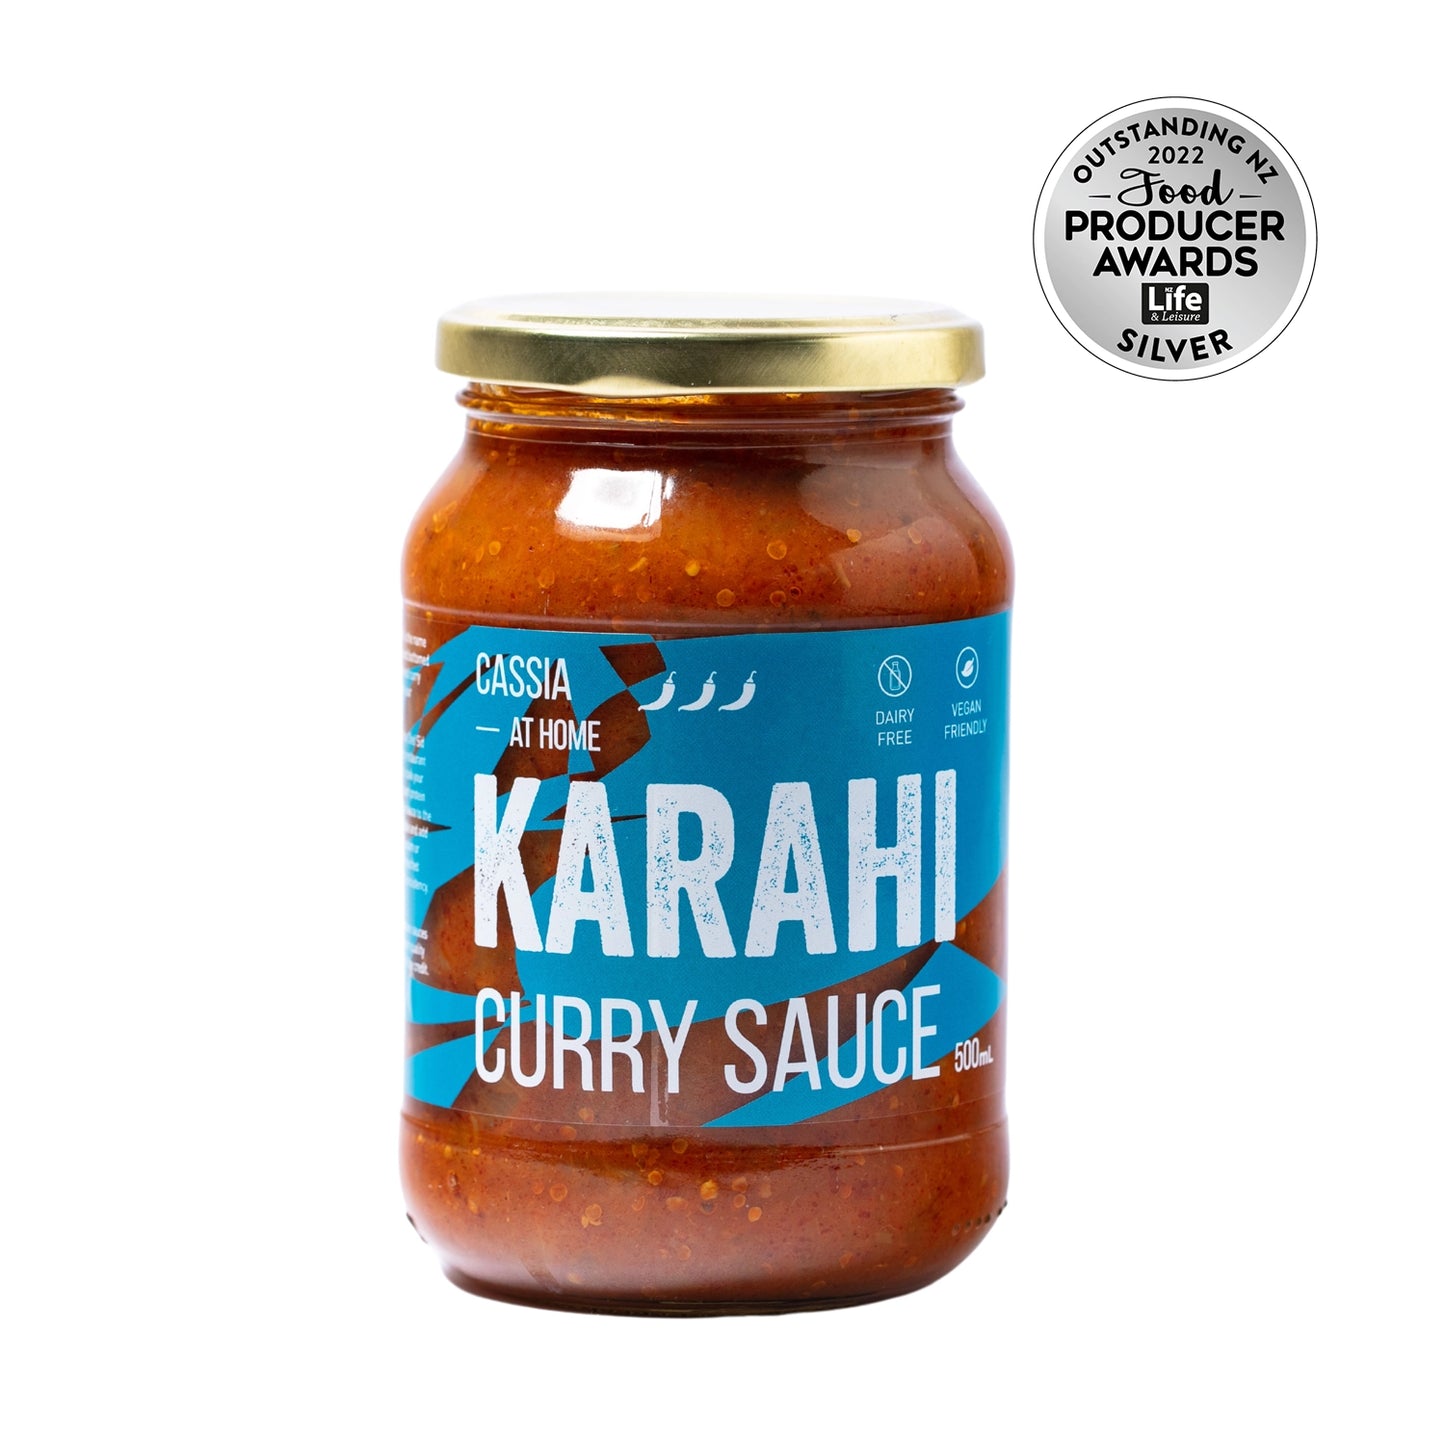 Karahi Curry Sauce Cassia At Home Silver Food Producer Awards 2022